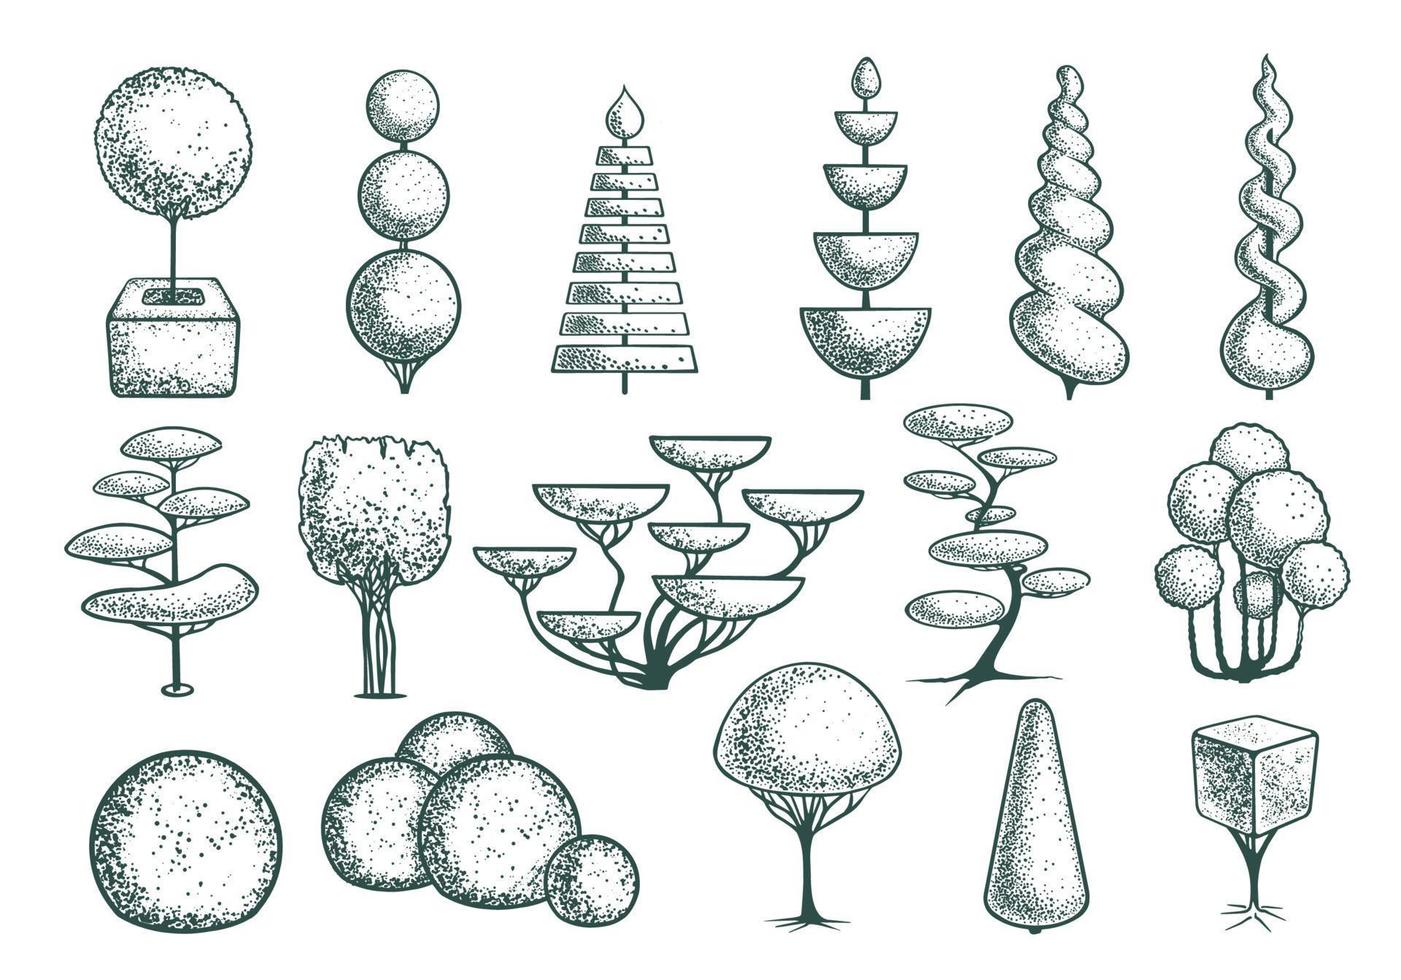 Seth esquisse des formes d'arbres topiaires. arbres géométriques pour la publicité et l'aménagement paysager. isolé sur fond blanc. vecteur. vecteur